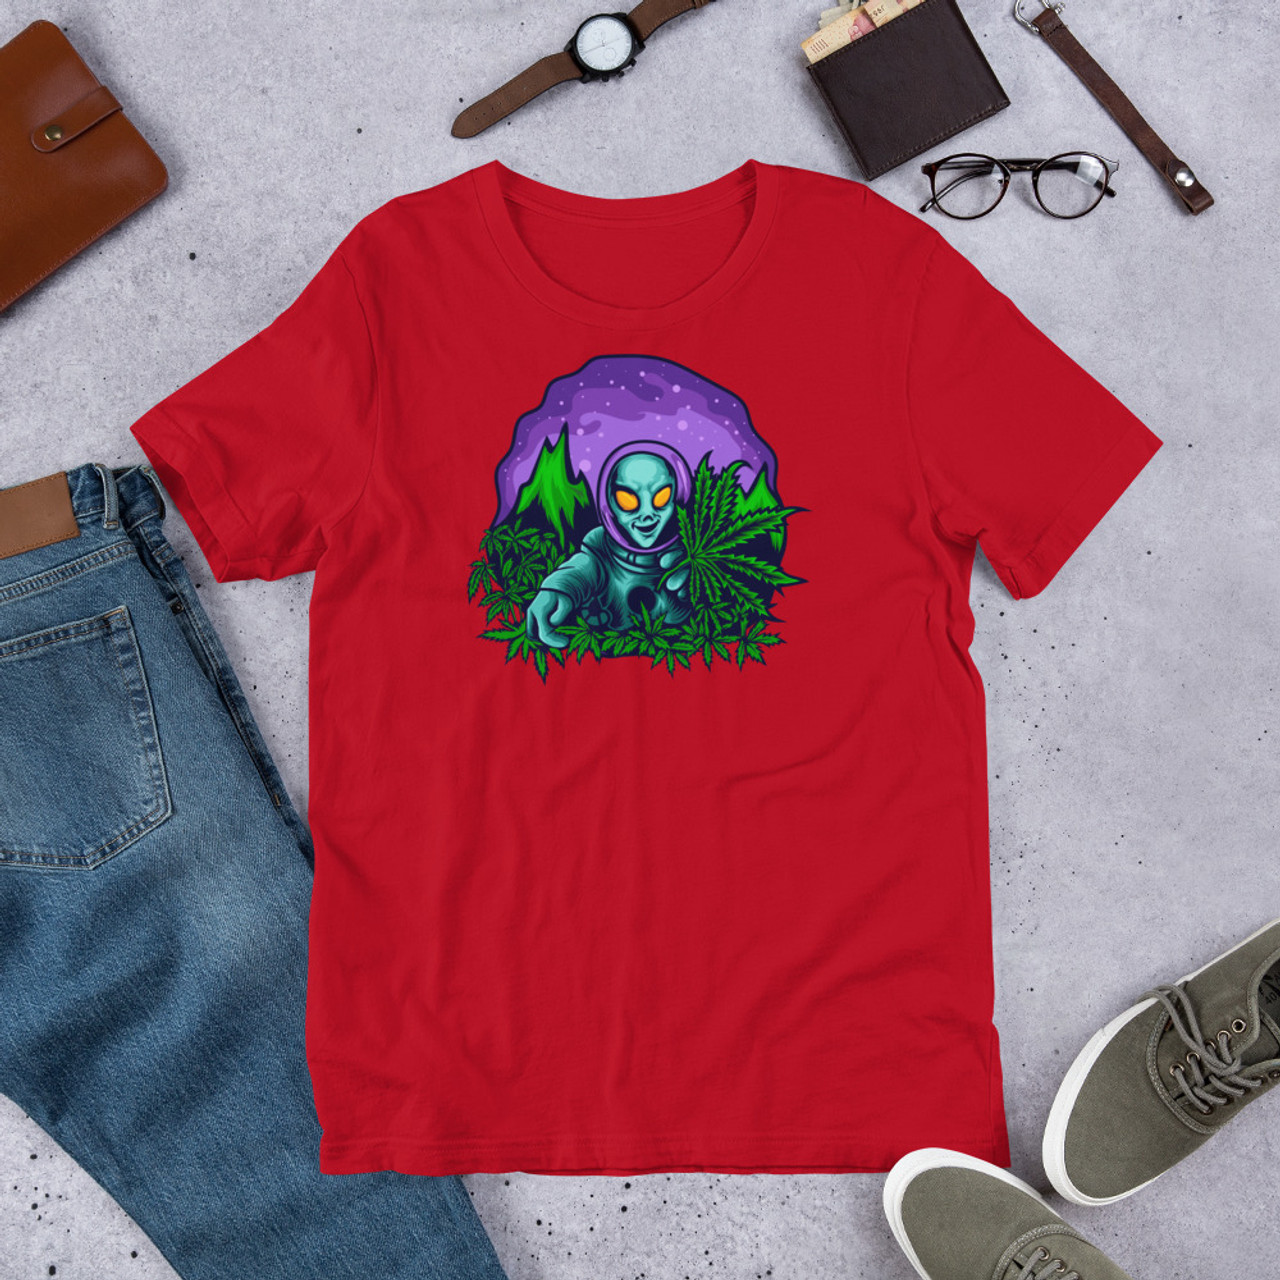 Red  Unisex Staple T-Shirt - Bella + Canvas 3001 Alien Cannabis Garden